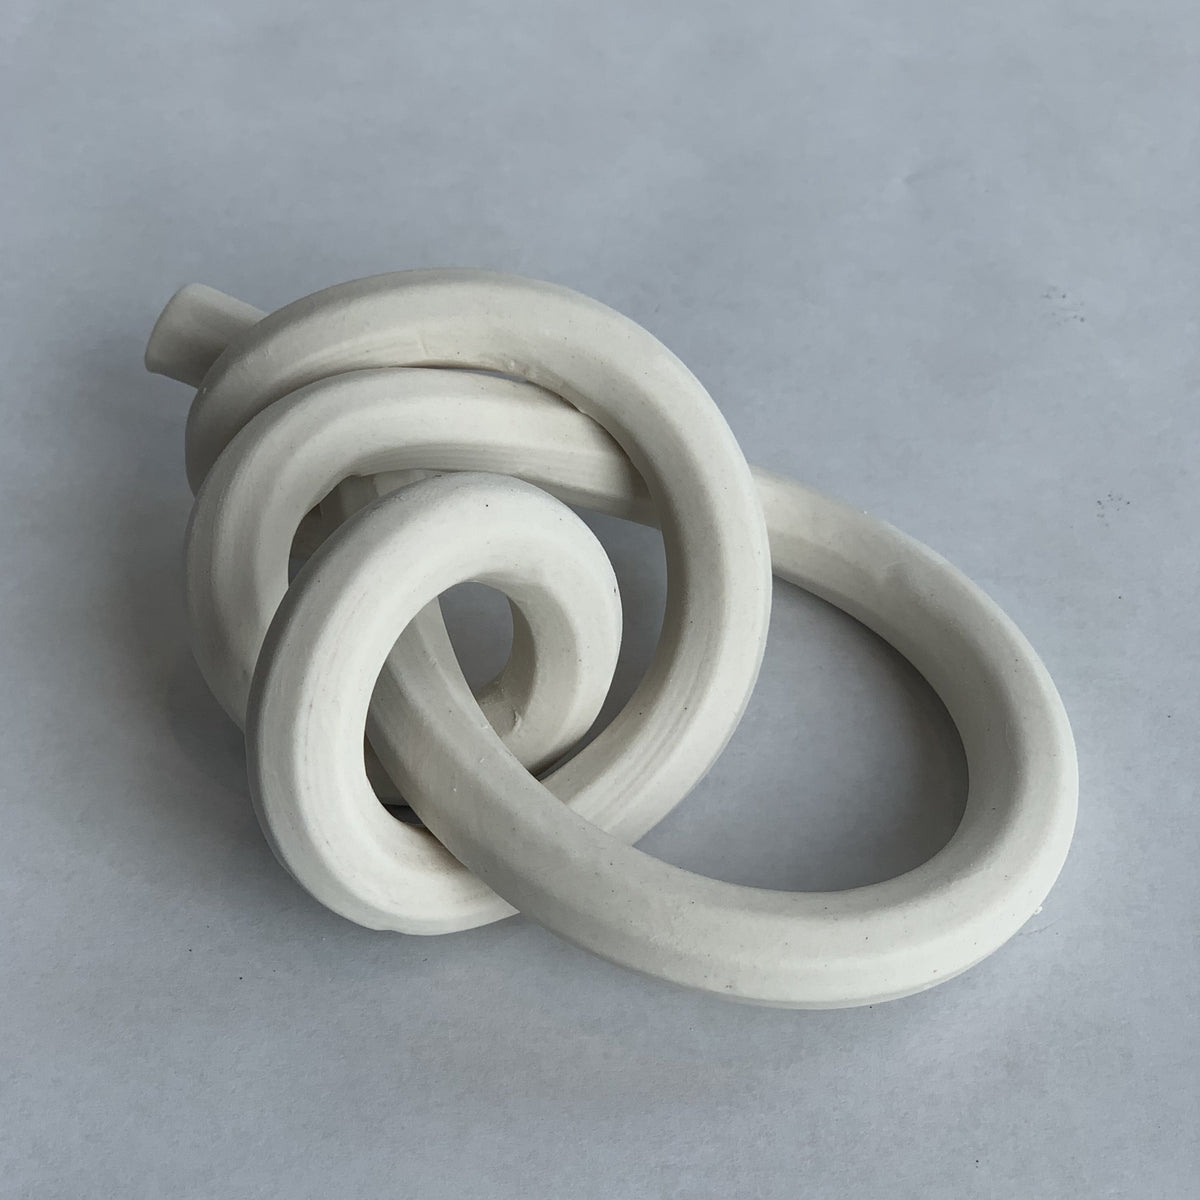 Porcelain Knot: Midshipman's Hitch – Purely Porcelain